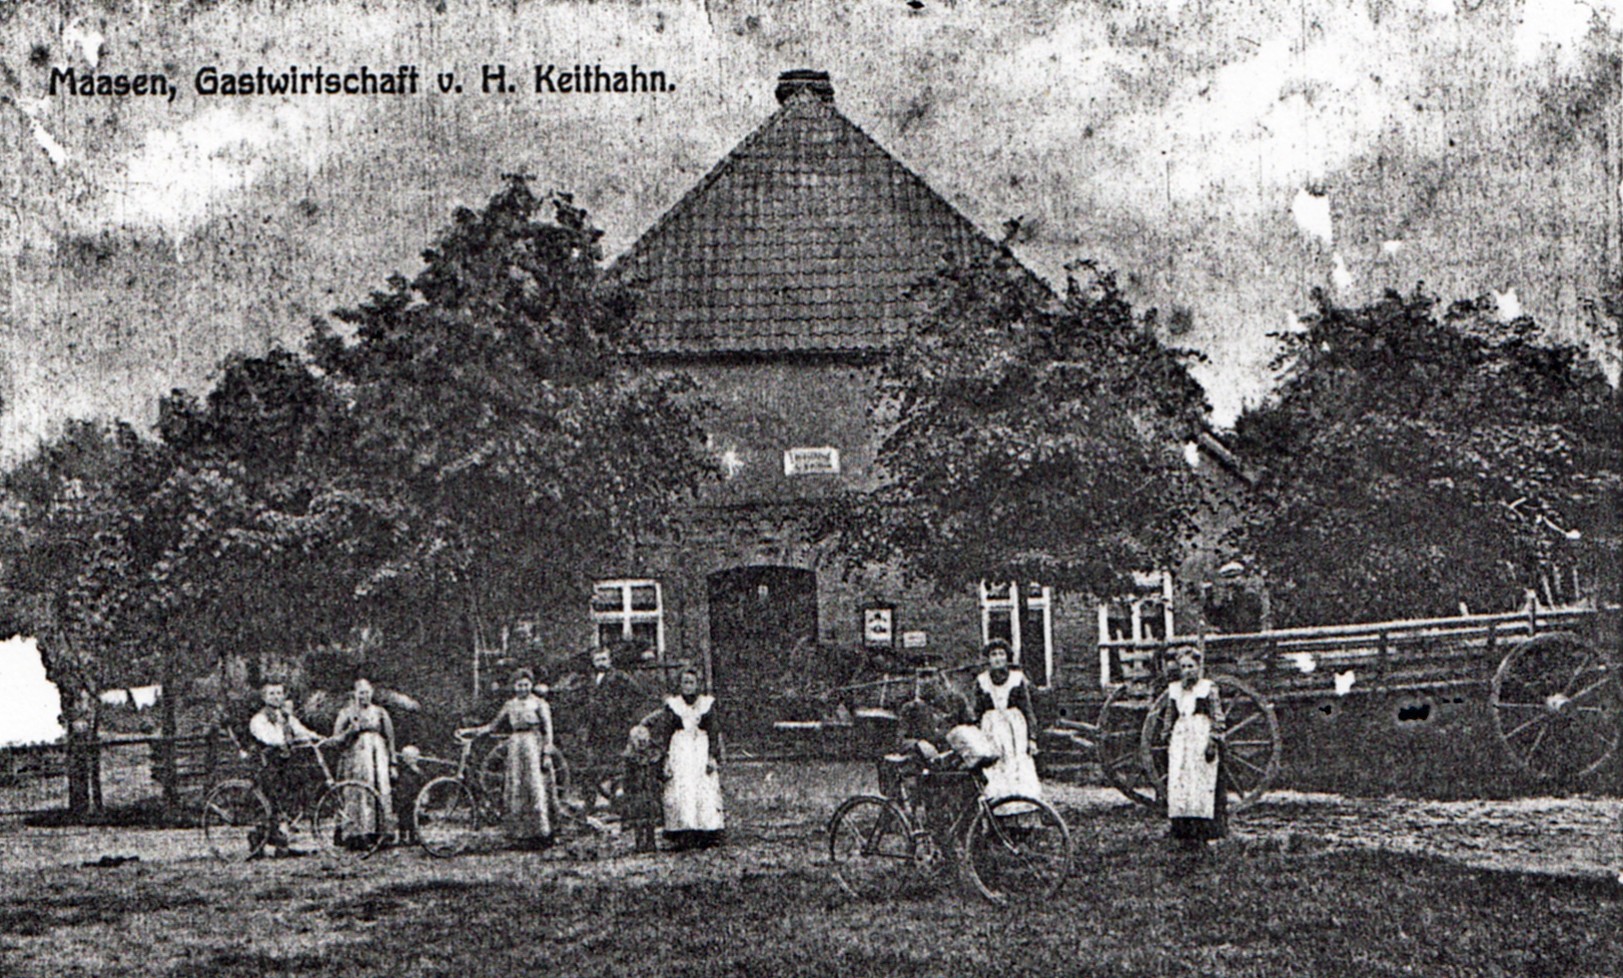 Gaststätte Keithahn in der Samtgemeinde Siedenburg - Gem. Maasen (Kreismuseum Syke CC BY-NC-SA)